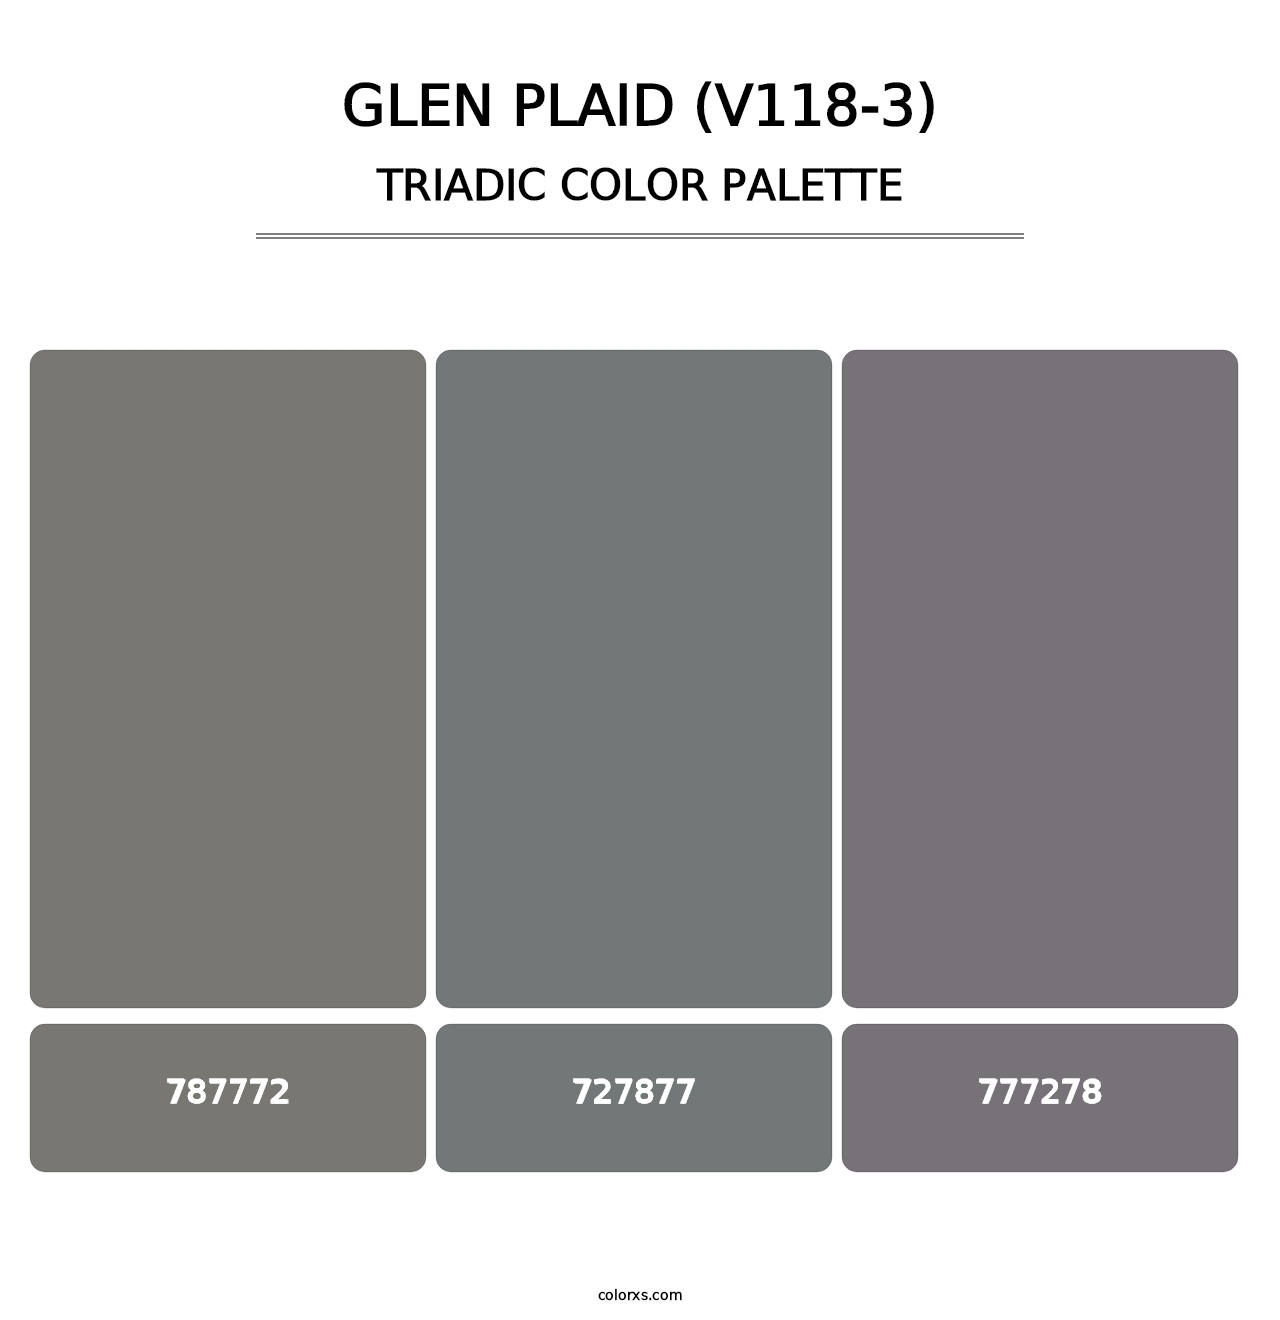 Glen Plaid (V118-3) - Triadic Color Palette